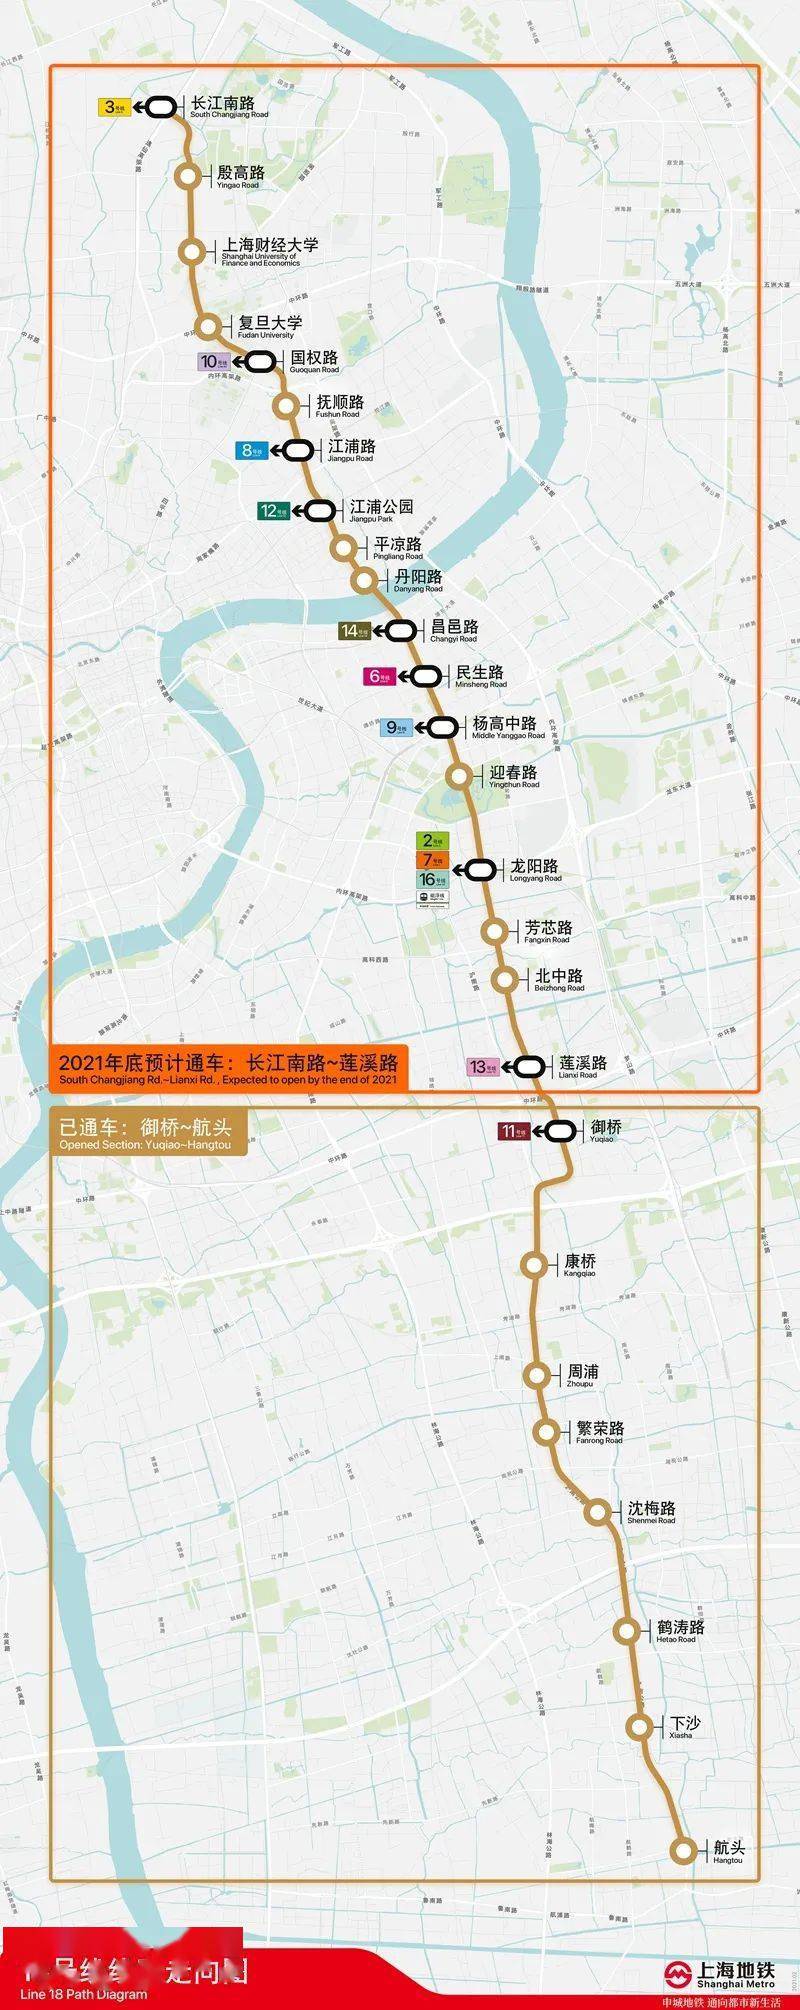 上海地铁18号线一期北段有望年内开通试运营!东东带你抢先体验